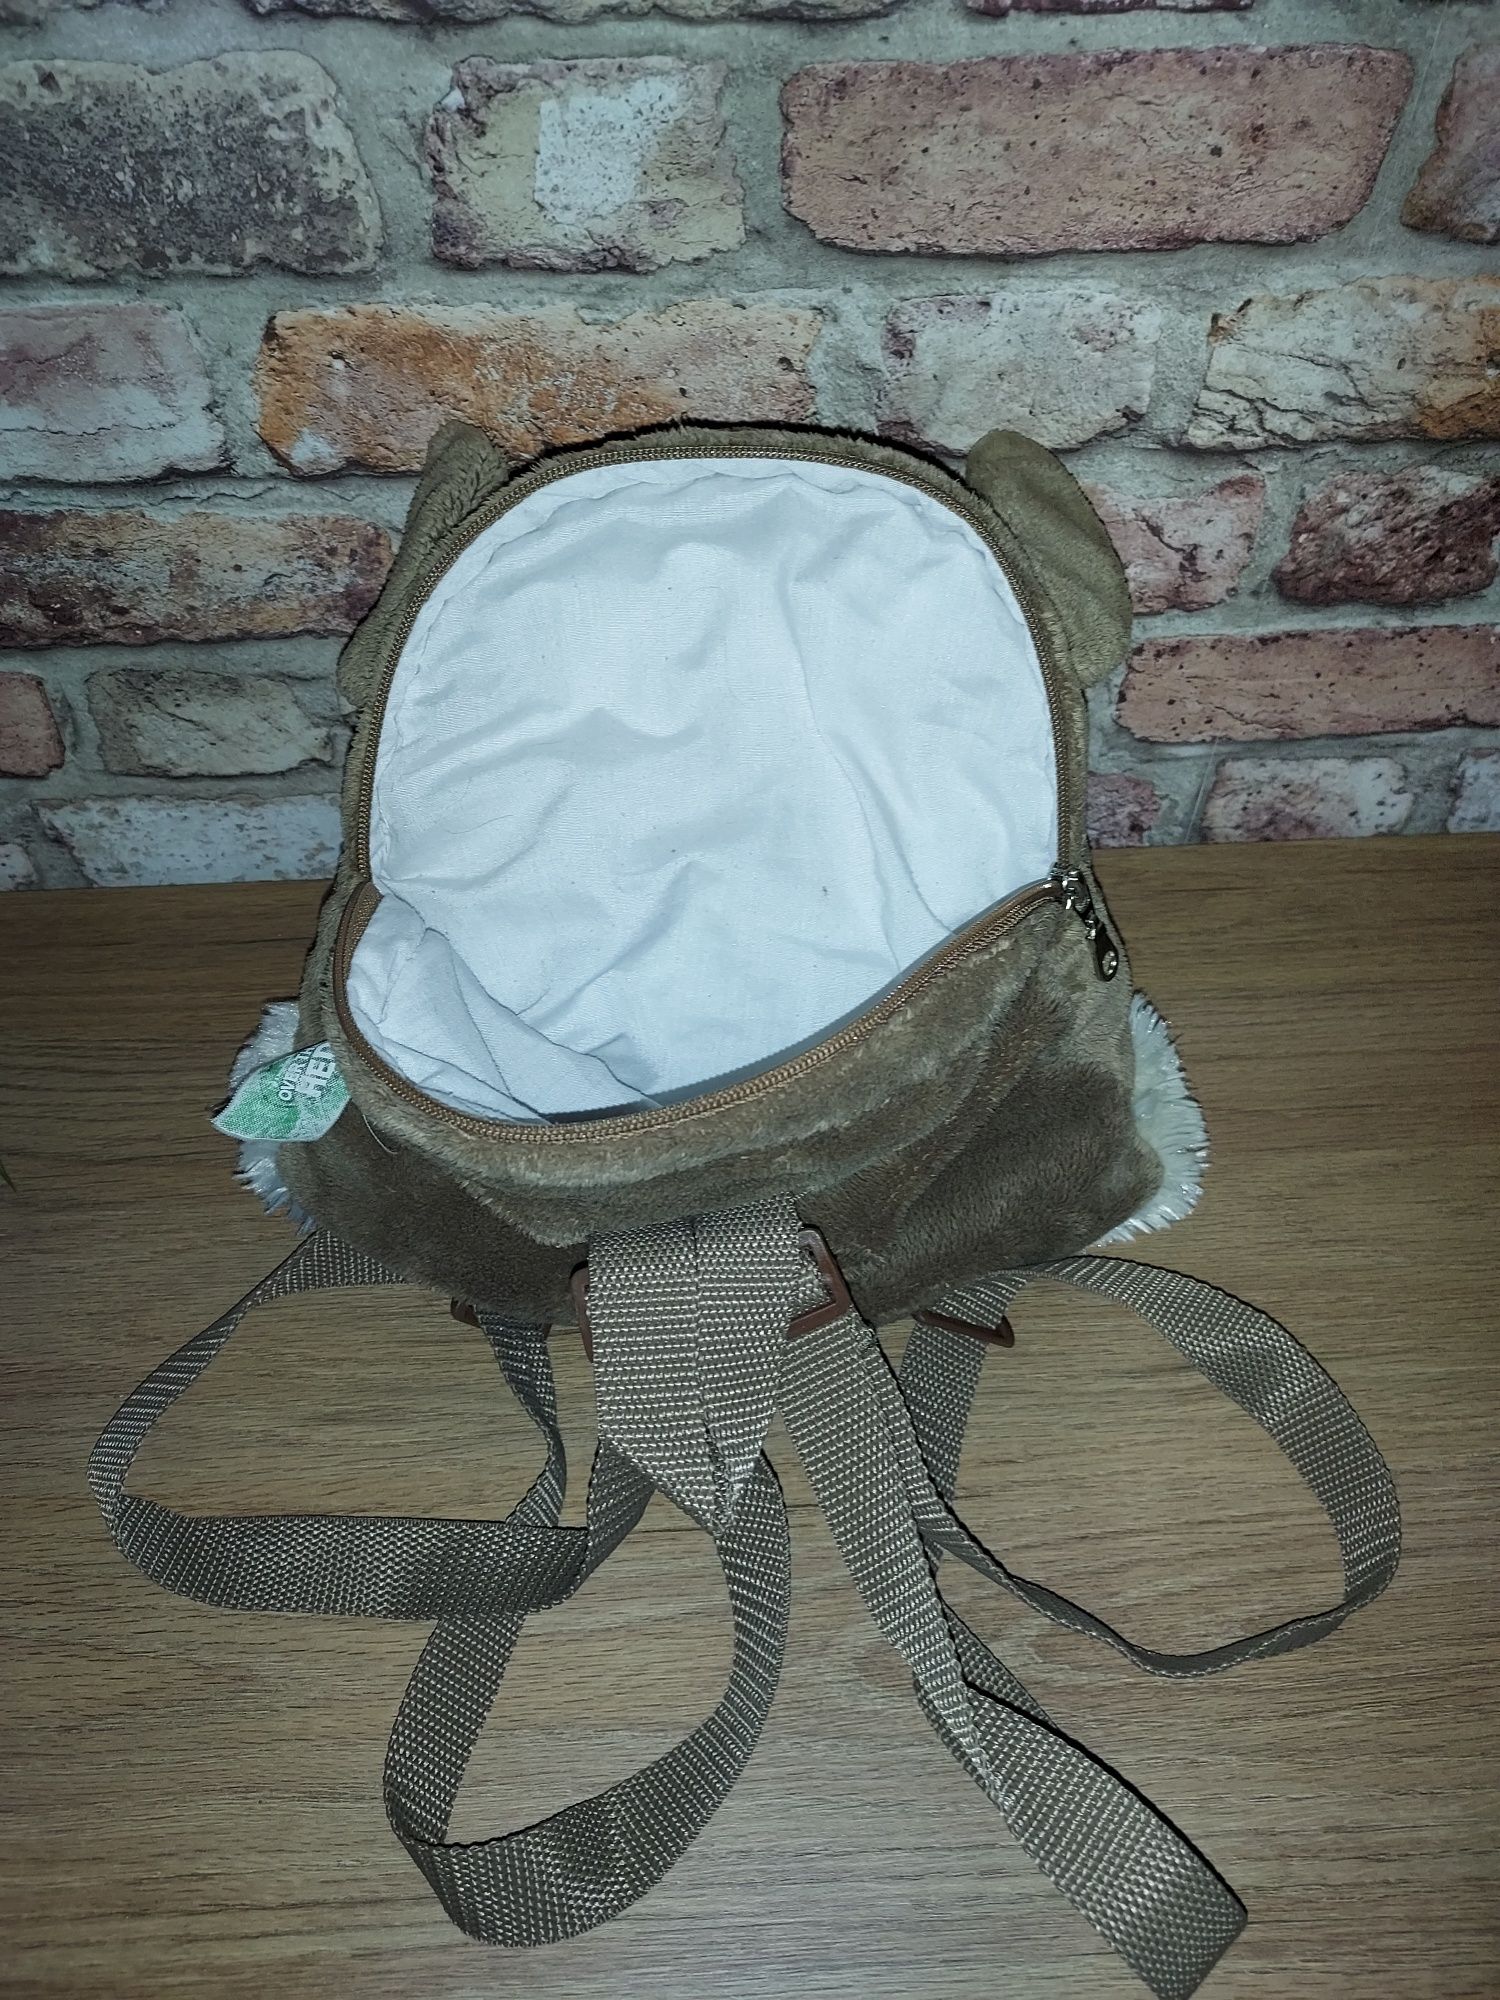 Plecak plecaczek głowa psa pojemny do przedszkola czy na wycieczki